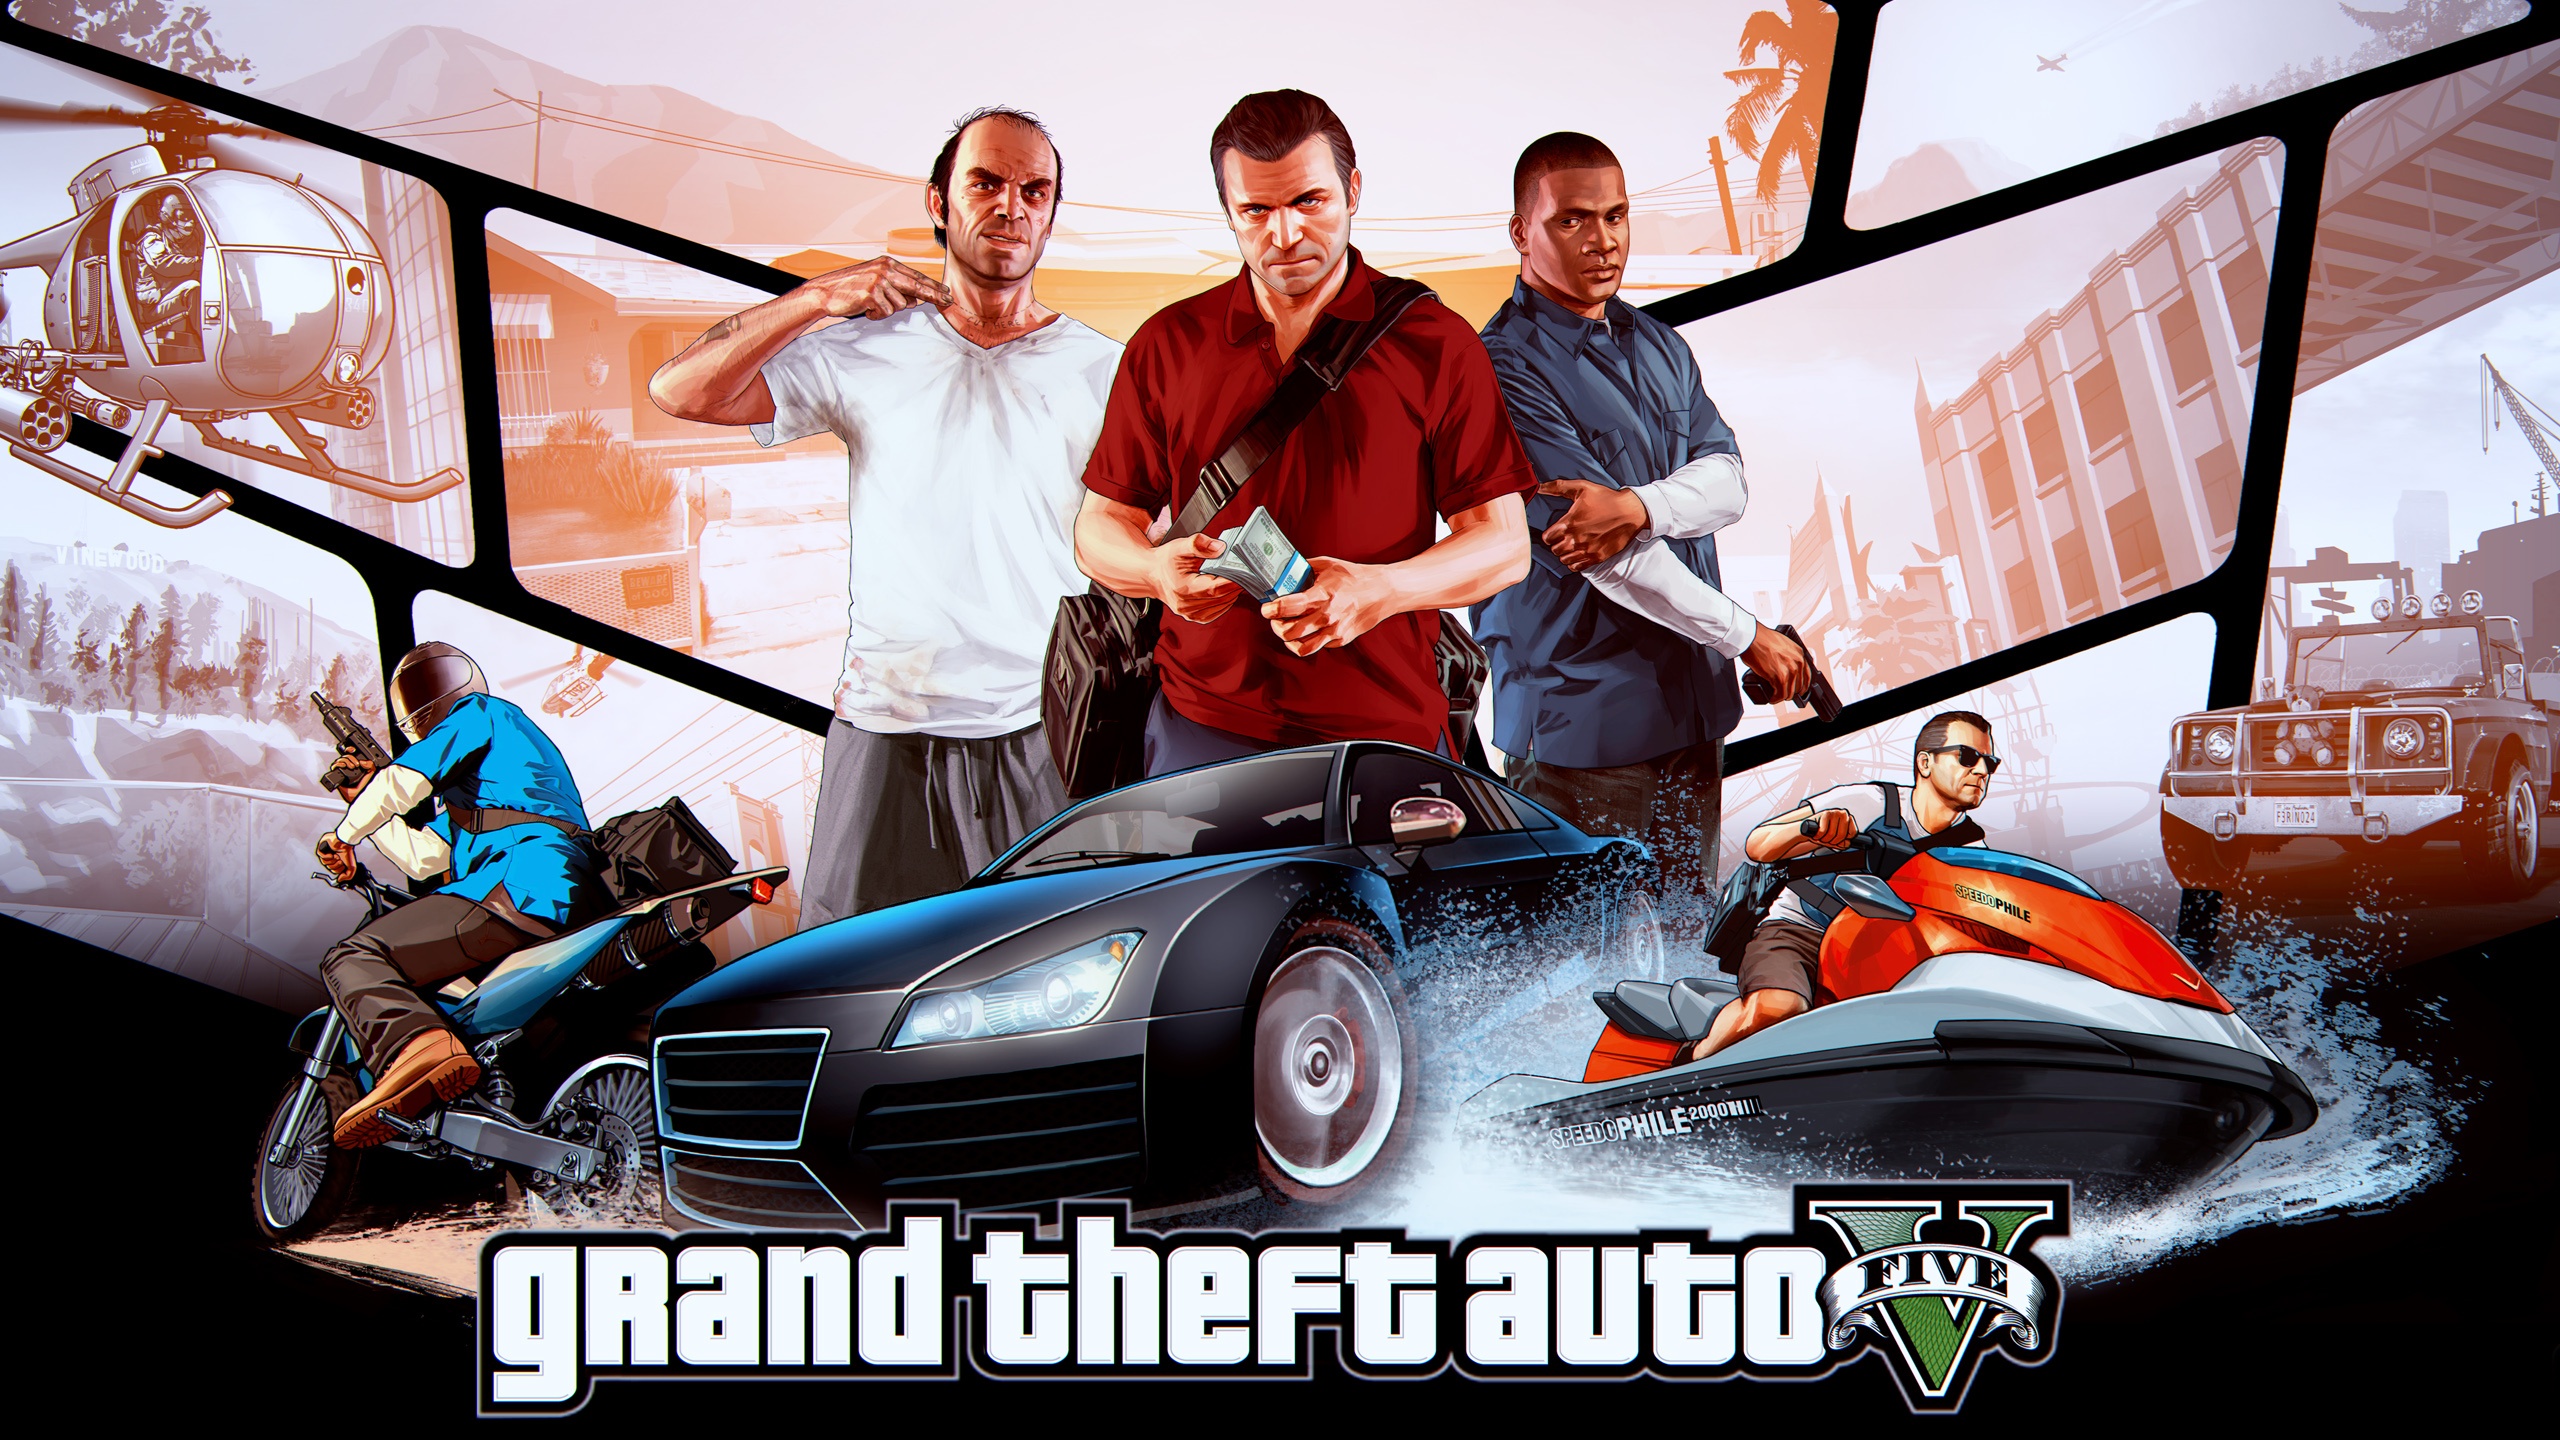 Grand Theft Auto V - Gta 5 - HD Wallpaper 